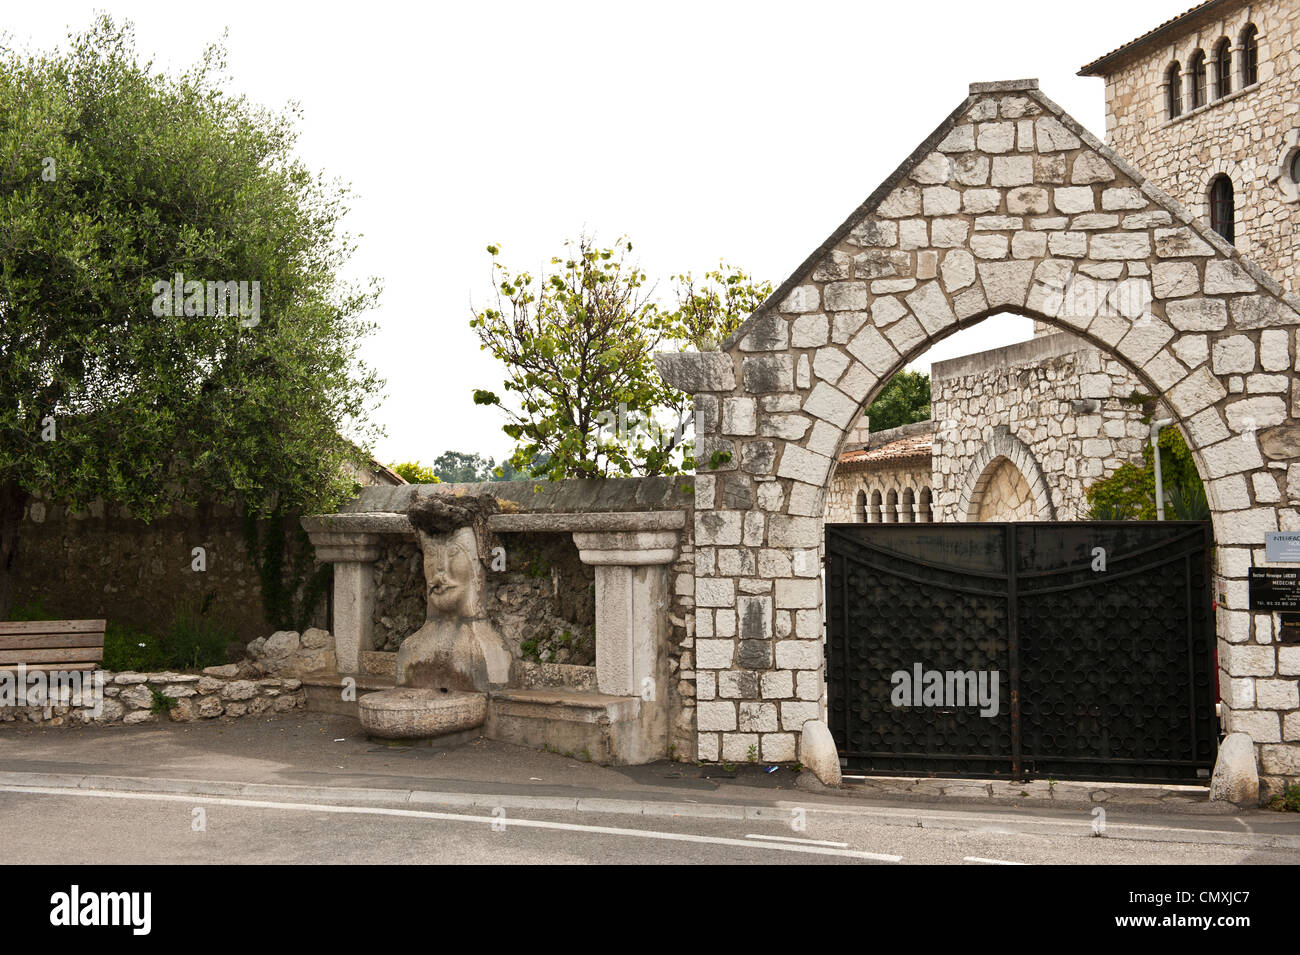 Un accès privé à une Gated communauté européenne à Saint-Paul, France. Banque D'Images